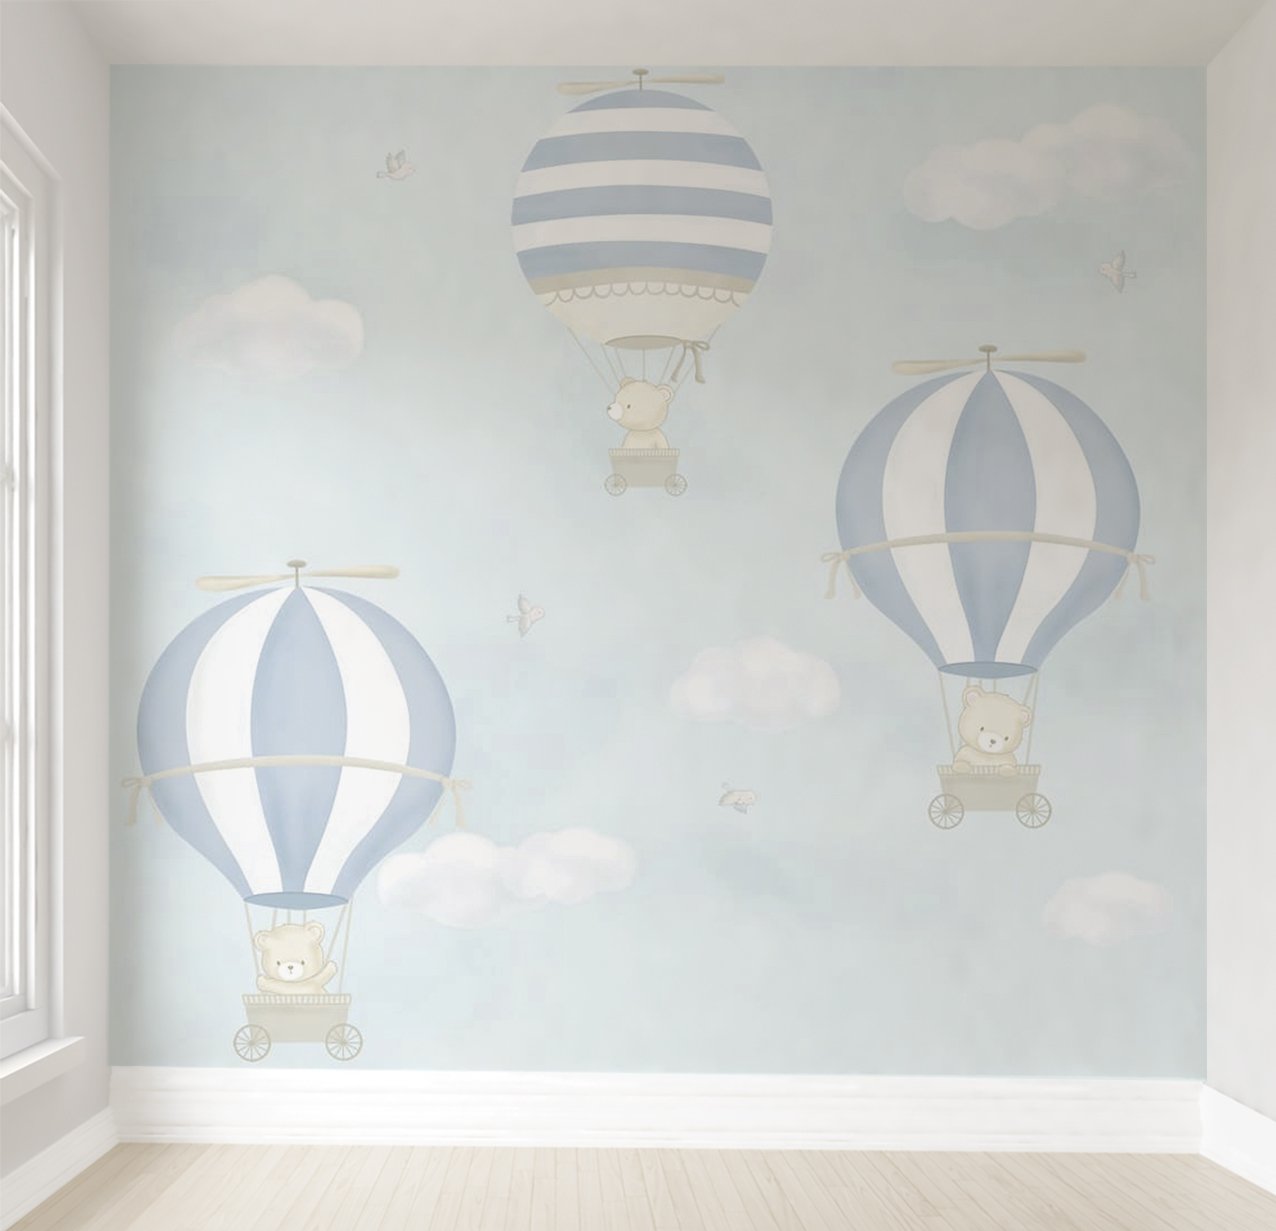 Papel de parede balão azul menino para quarto de bebê infantil M² PP98